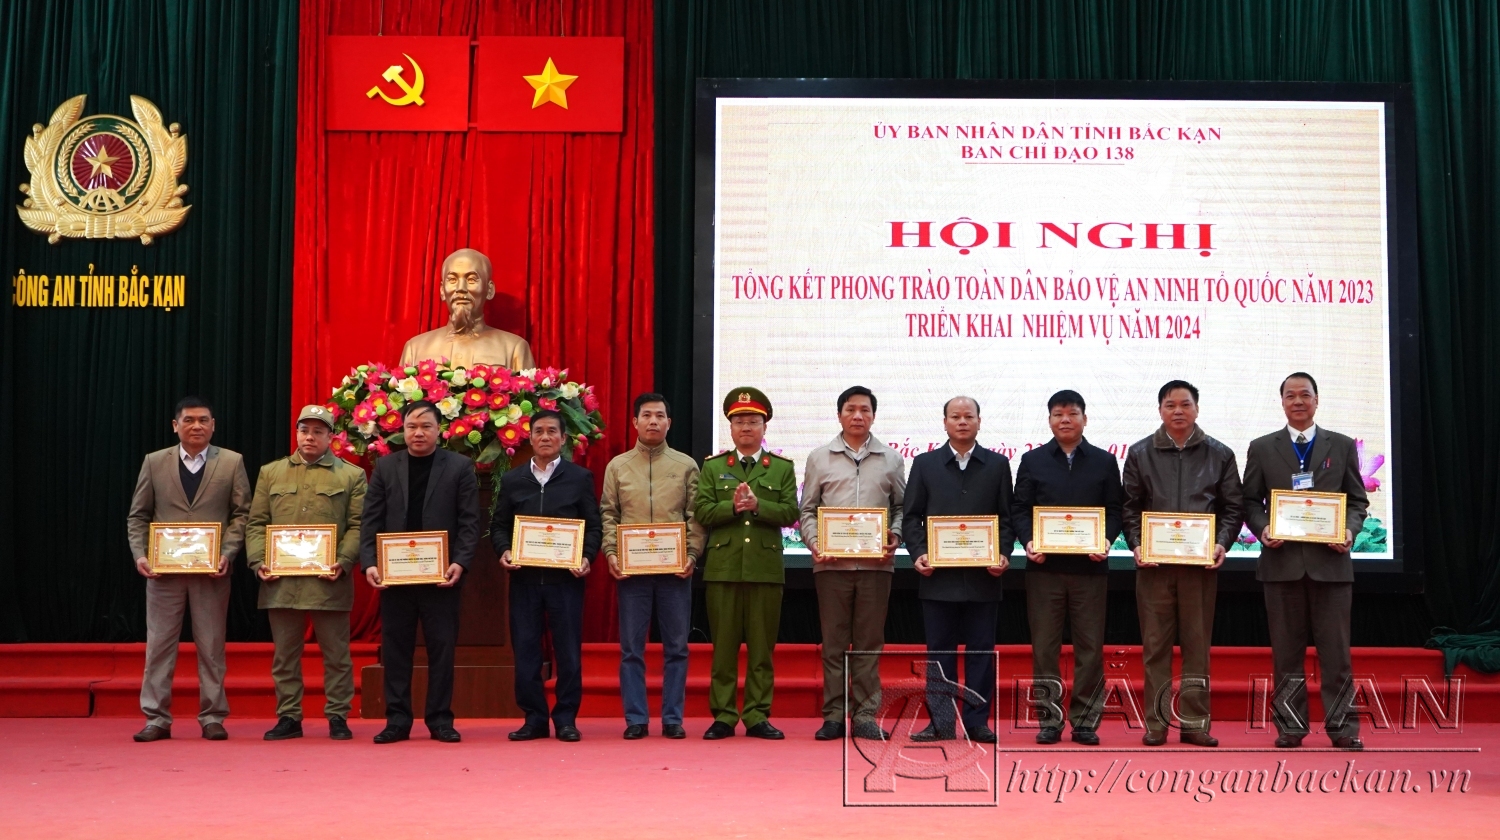 Thượng tá Lê Hồng Giang – Phó Giám đốc Công an tỉnh trao Giấy khen của Giám đốc Công an tỉnh cho các tập thể, cá nhân